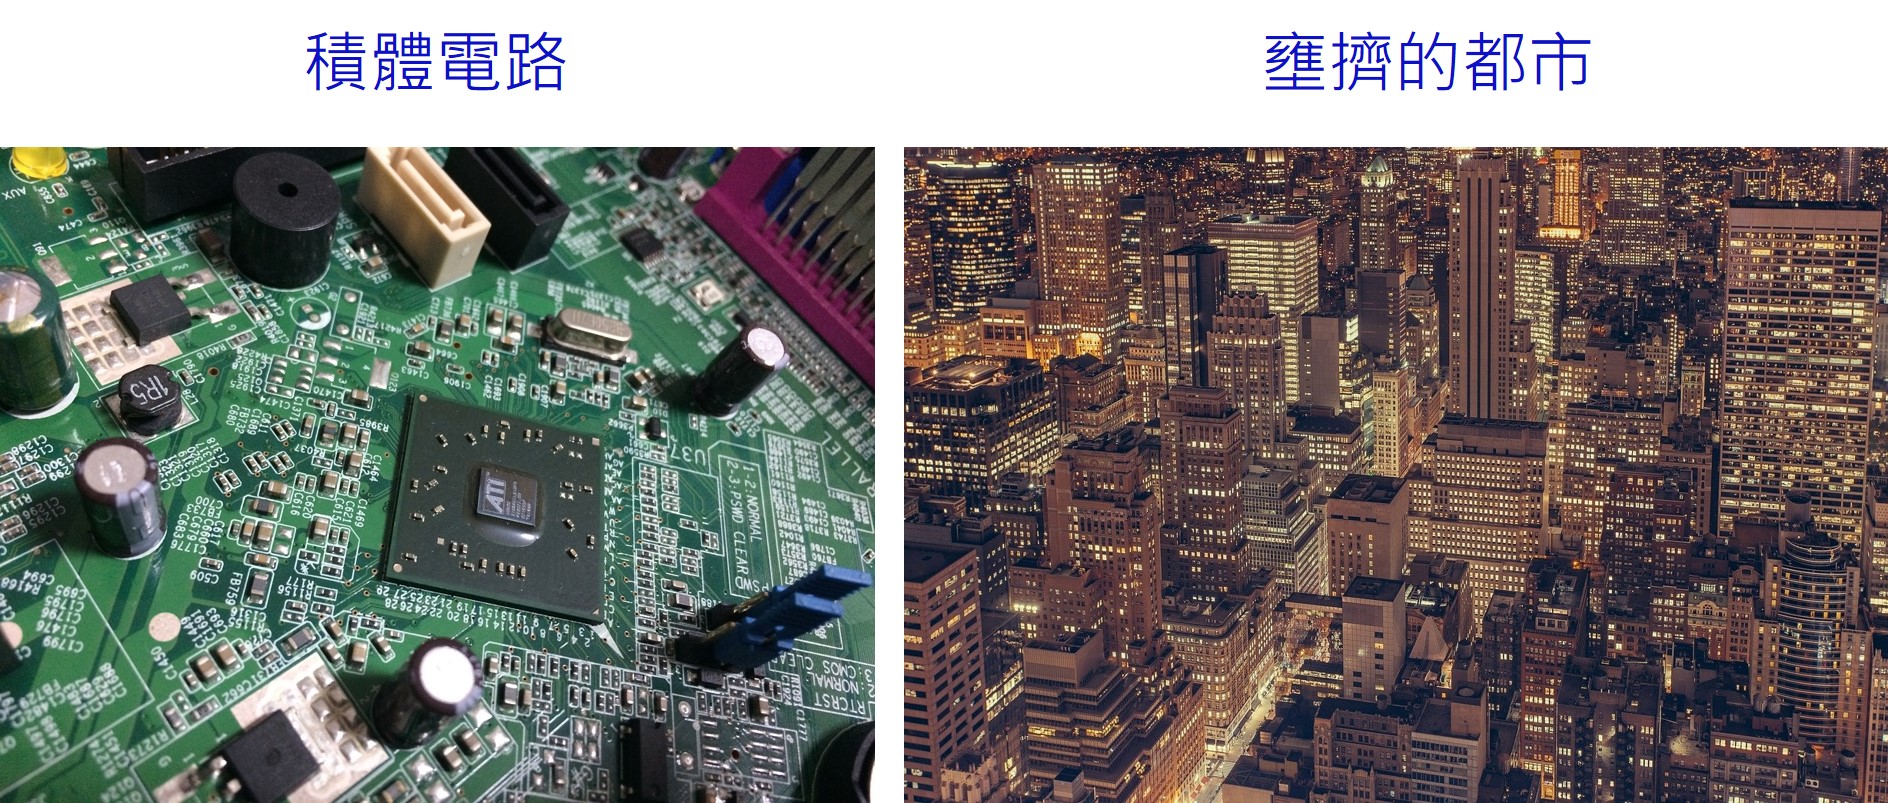 圖一：三維積體電路如同在高人口密度的城市中蓋上一棟棟的摩天大樓 (Image from Pixabay)